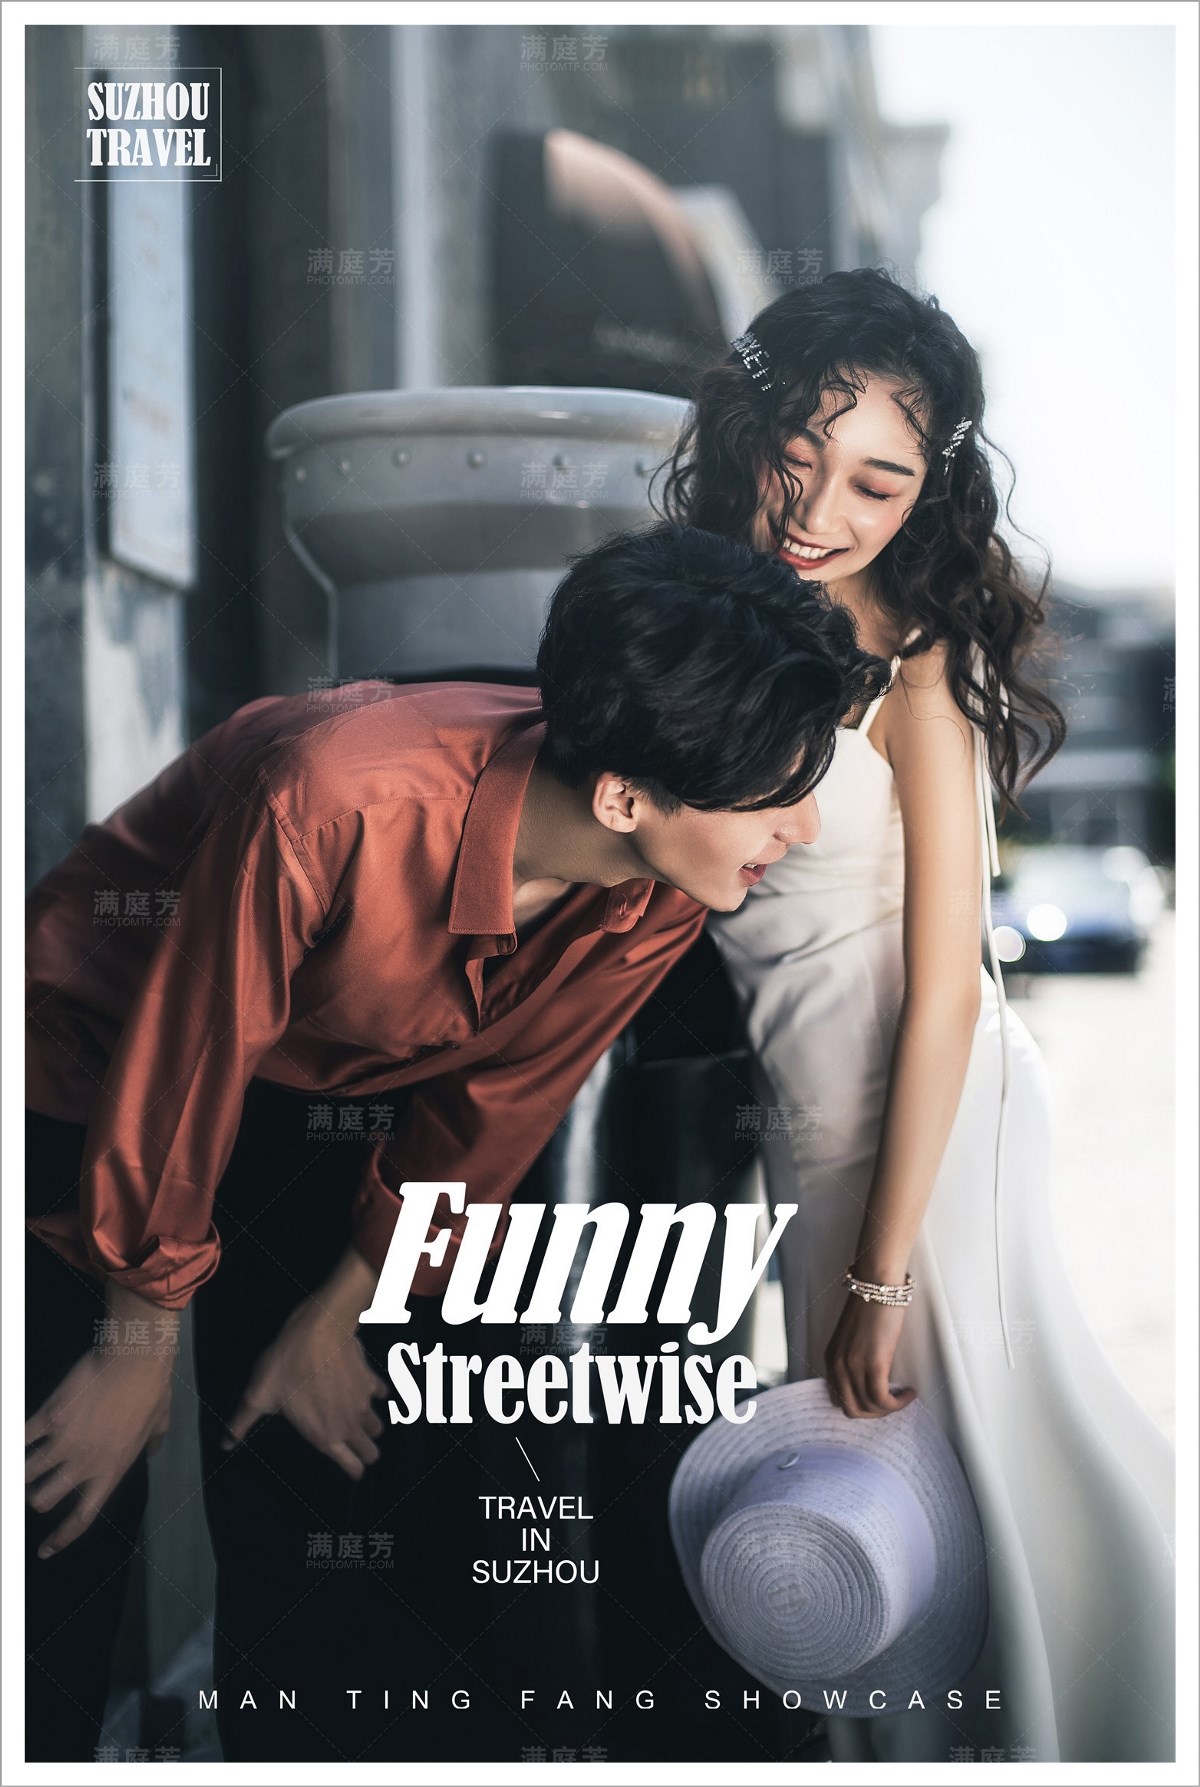 《Funny streetwise》修图师大陆作品